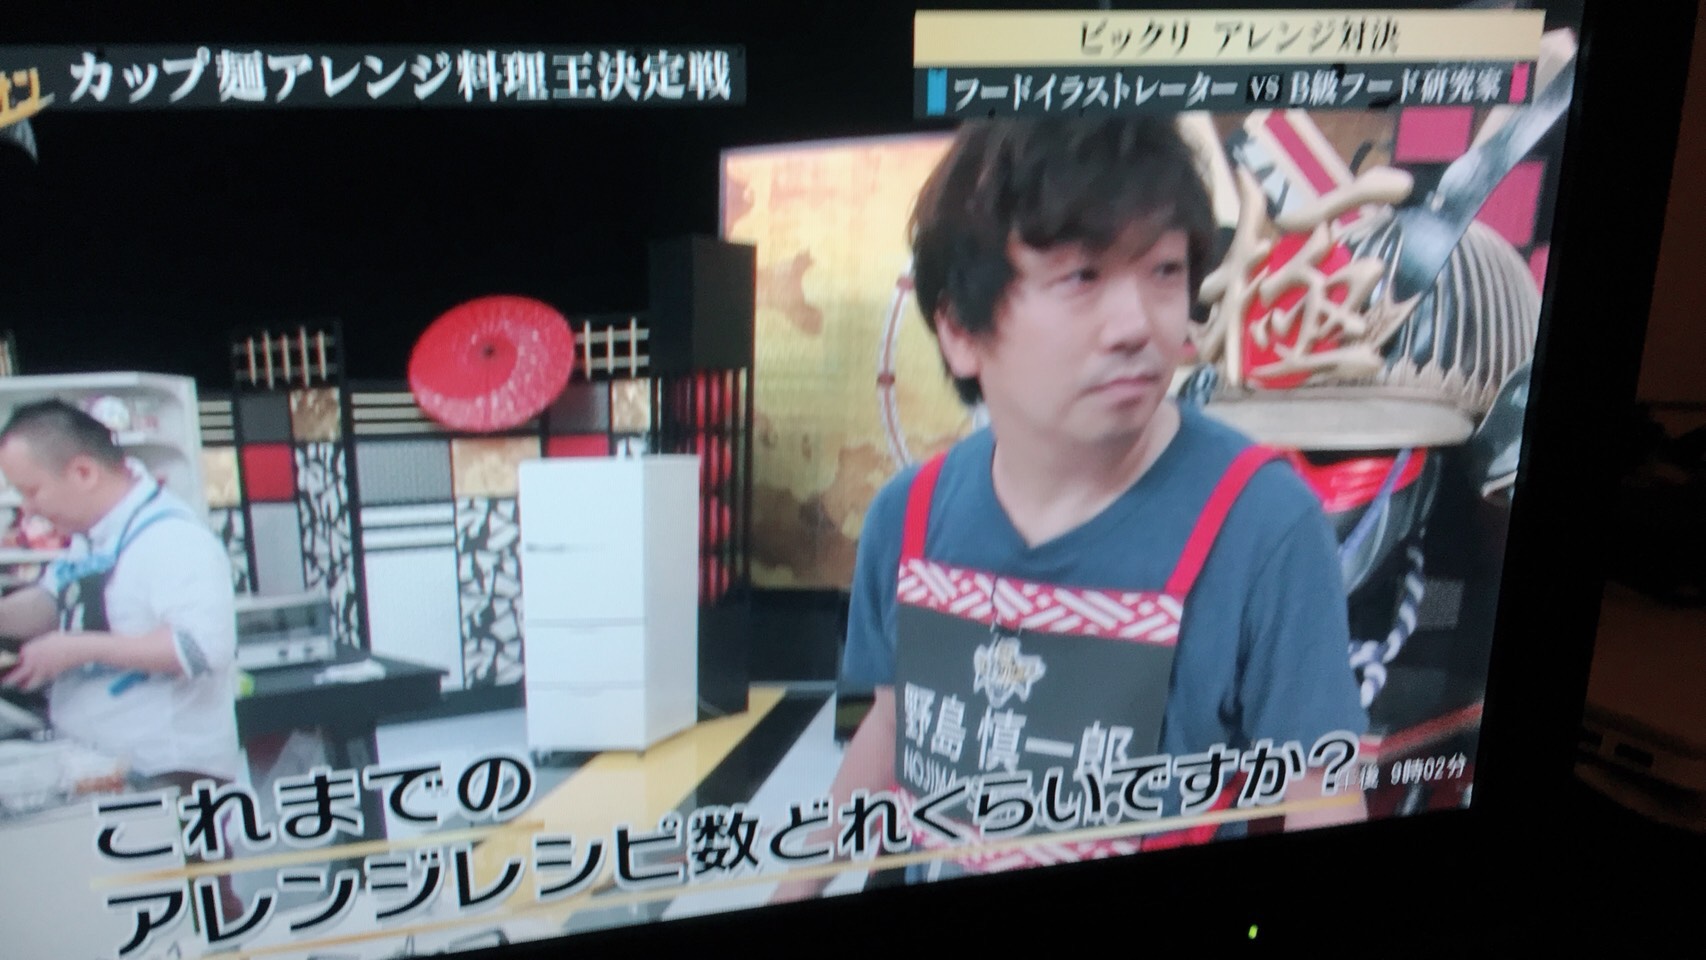 Tvチャンピオン極 カップ麺アレンジ料理王選手権 に出演しました 健全なホームページ